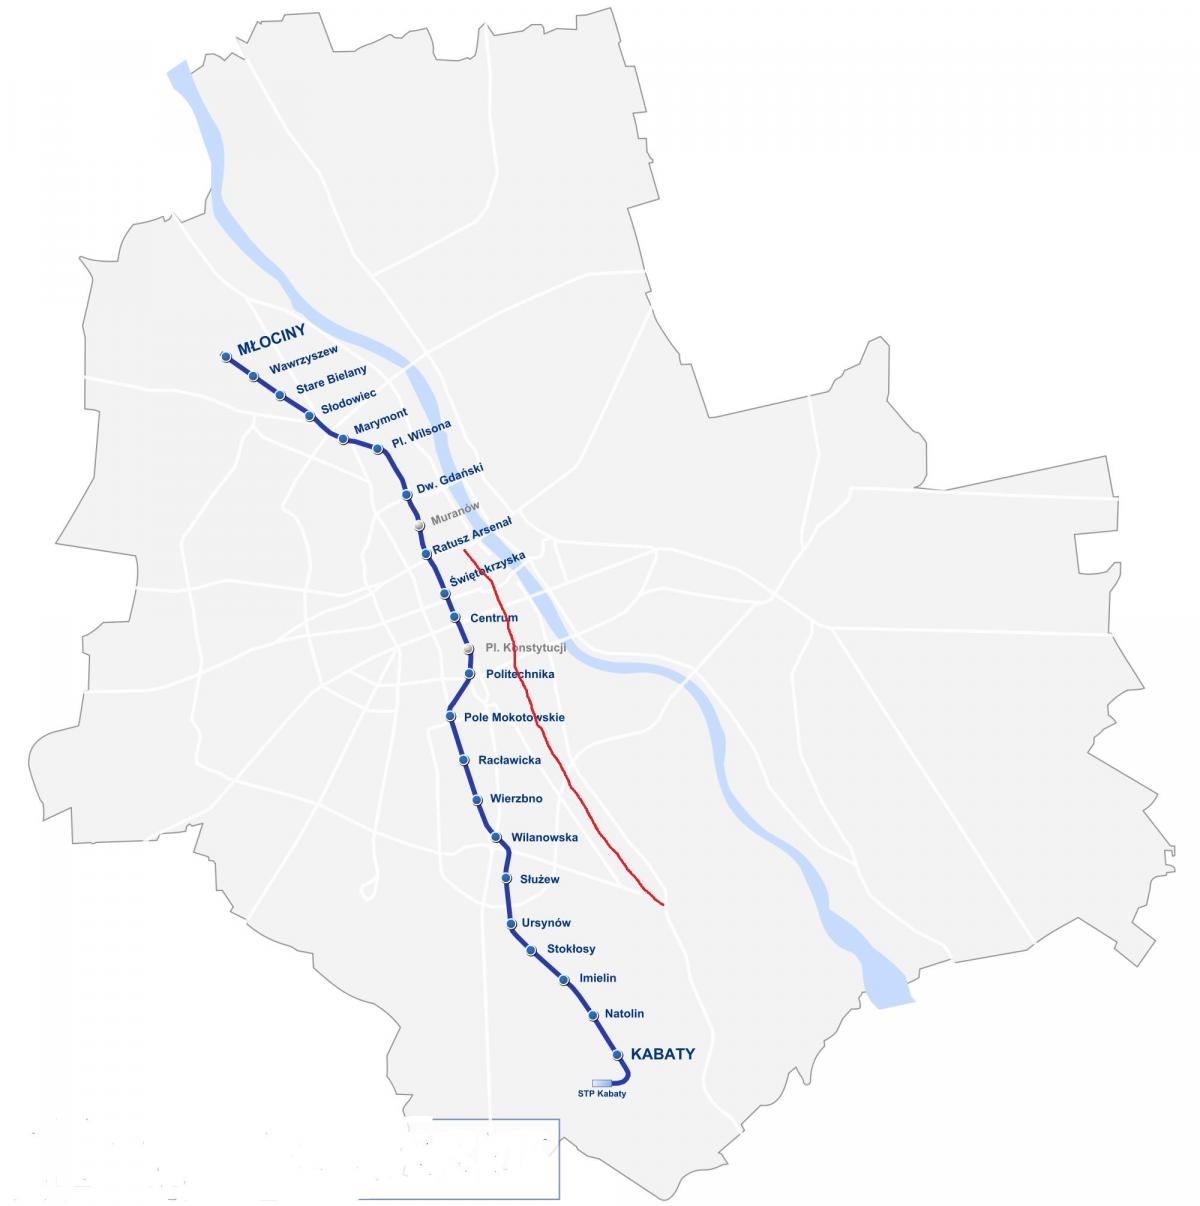 Χάρτης της Βαρσοβίας, το royal route 